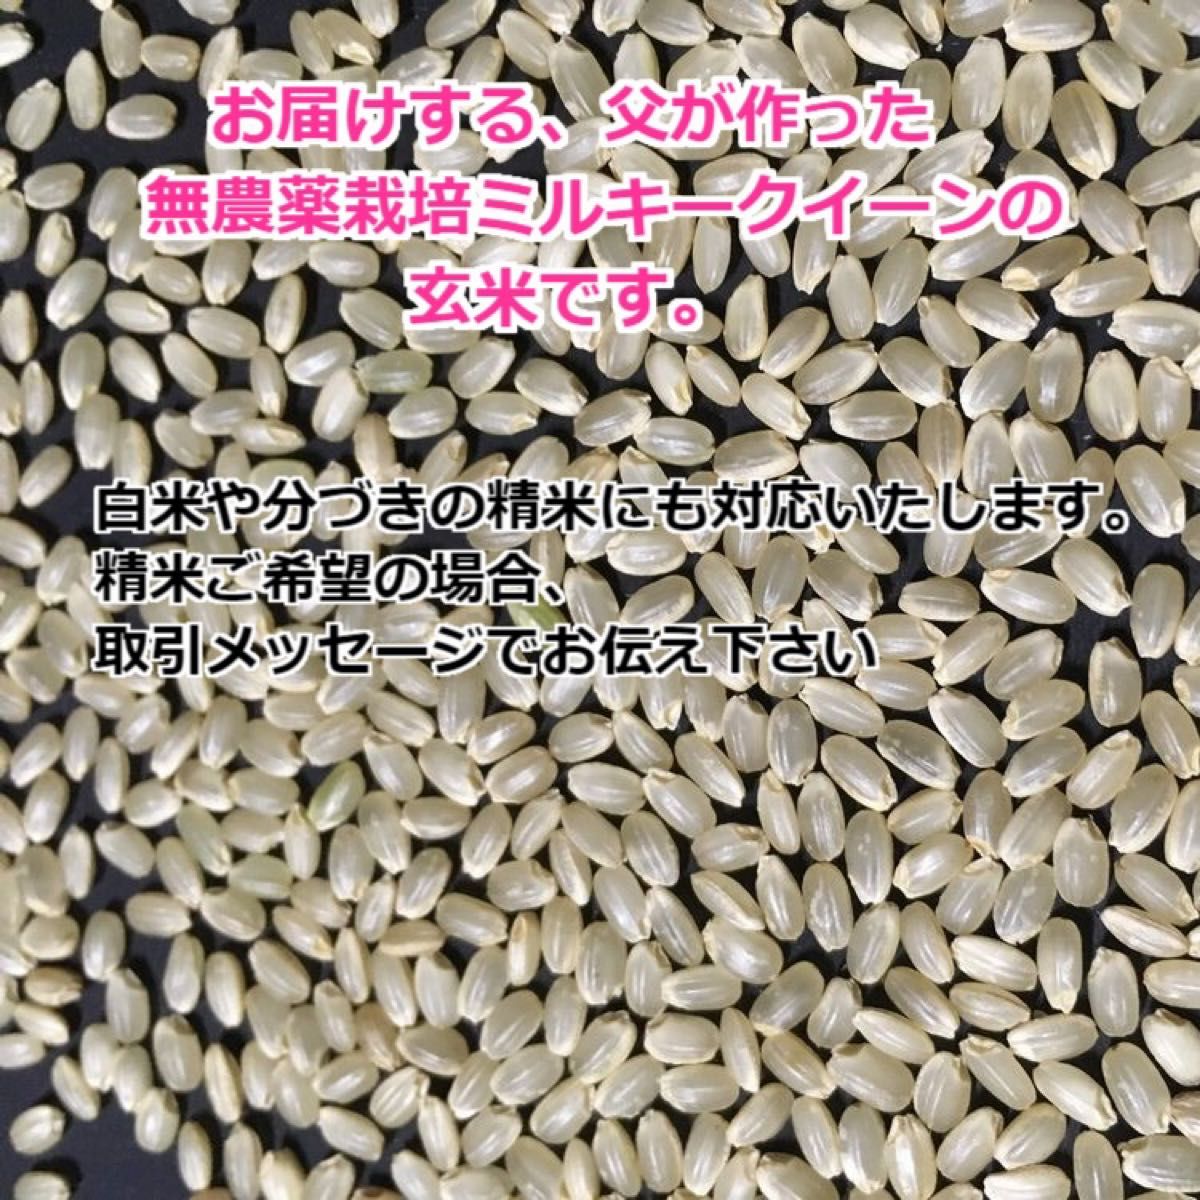 【令和5年産】無農薬栽培米・ミルキークイーン《玄米 5kg》精米にも無料対応